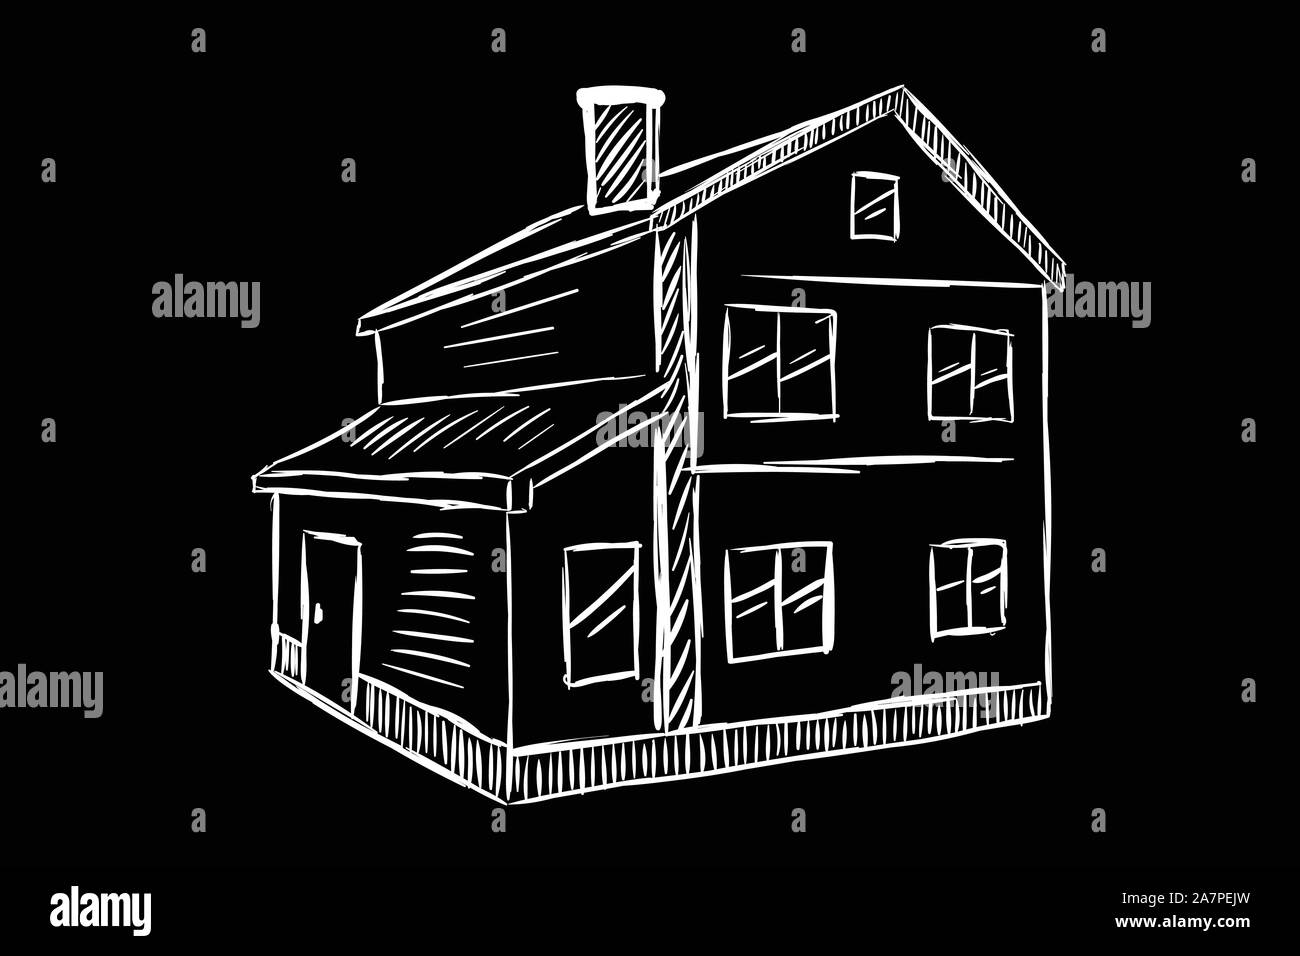 Zweistöckiges Haus Skizze weiß schwarz Stock Vektor